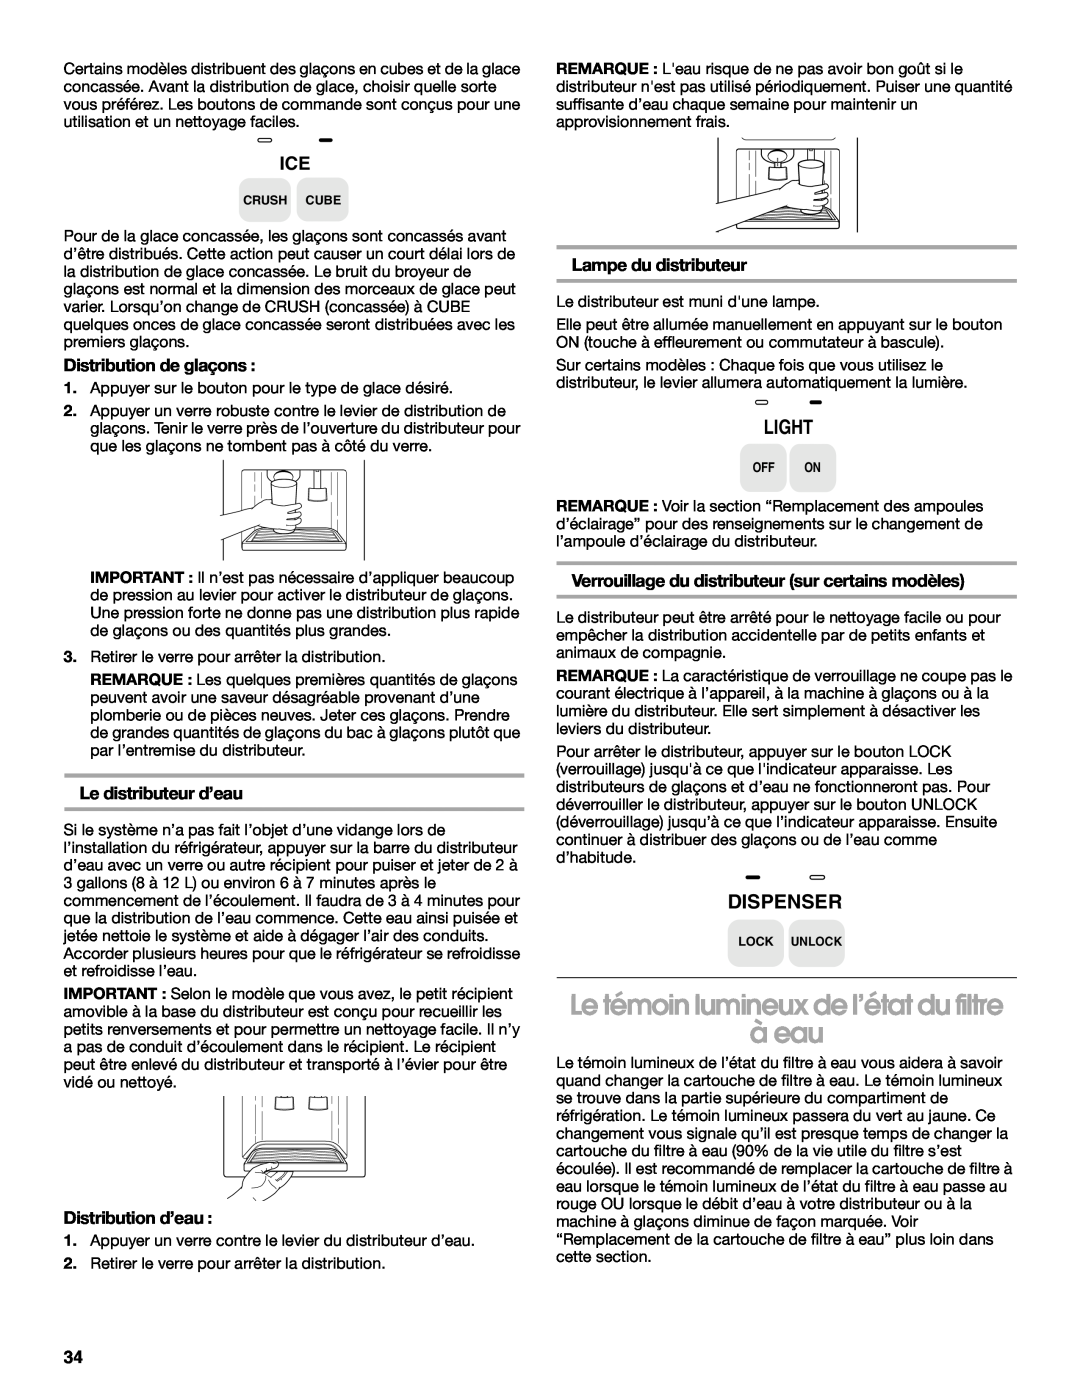 Whirlpool RS22AQXKQ02 manual Le témoin lumineux de l’état du filtre à eau, Light, Dispenser, Distribution de glaçons 